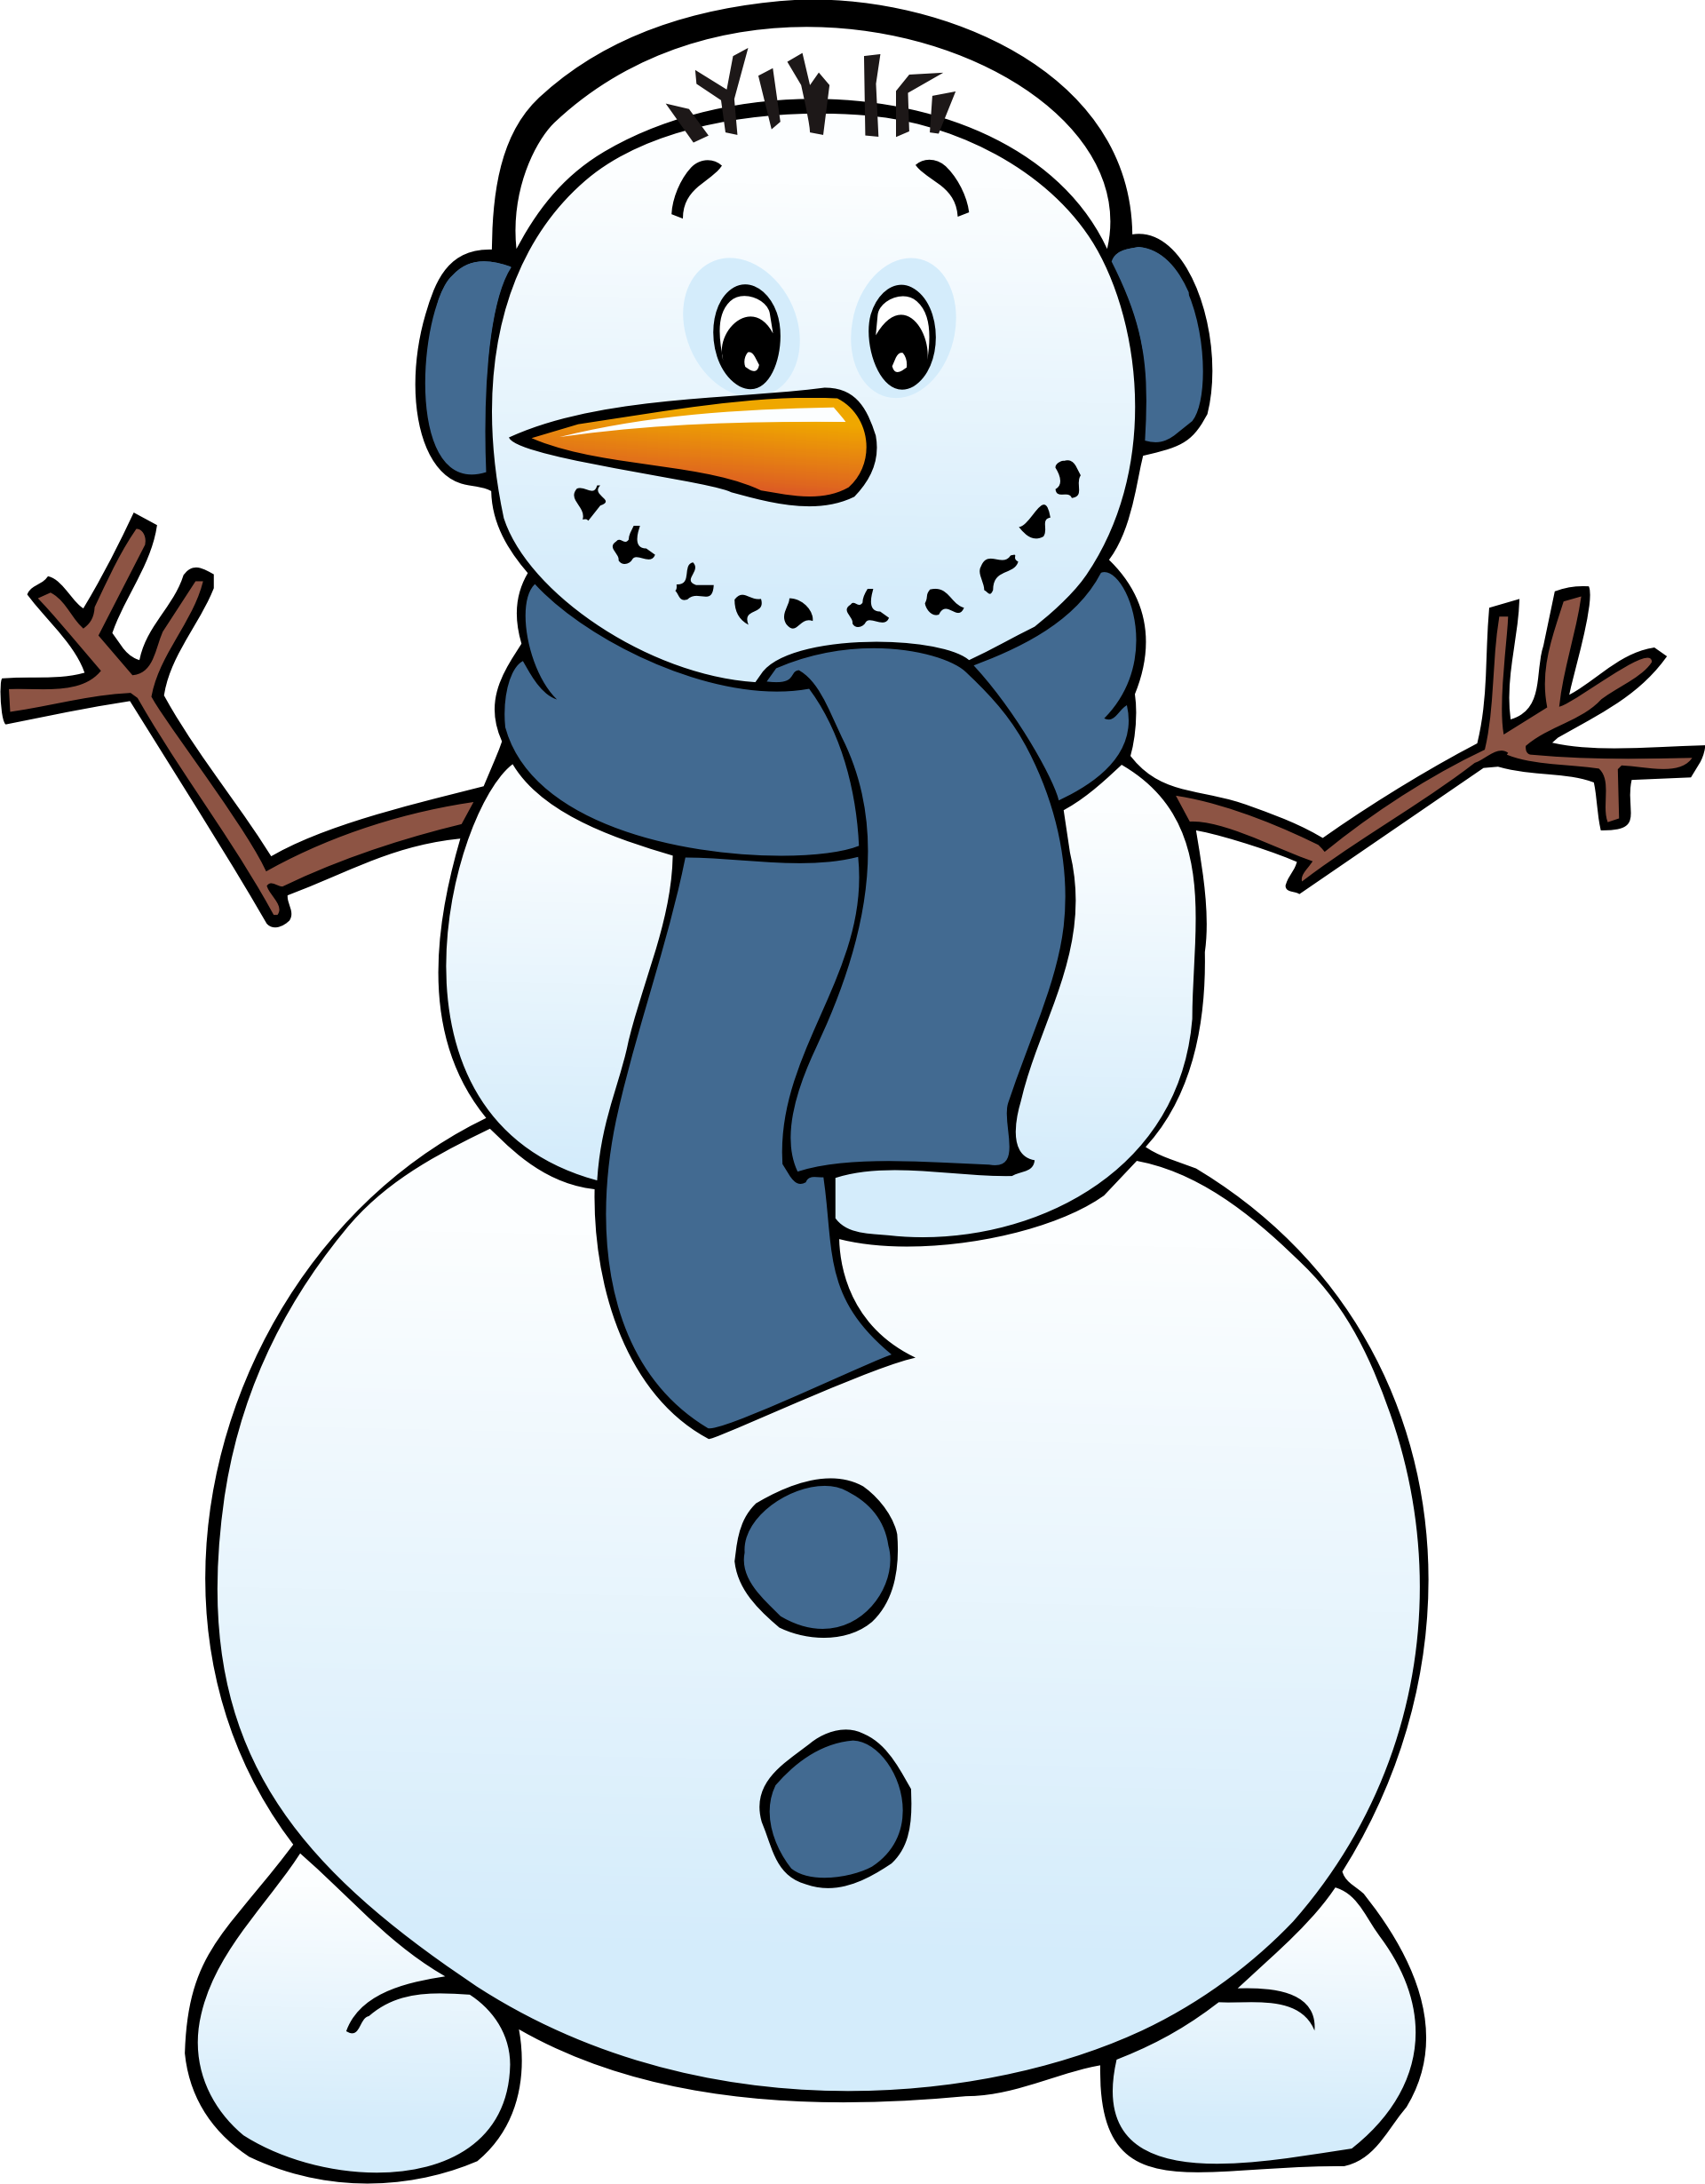 free snowman clipart - Free Snowman Clipart